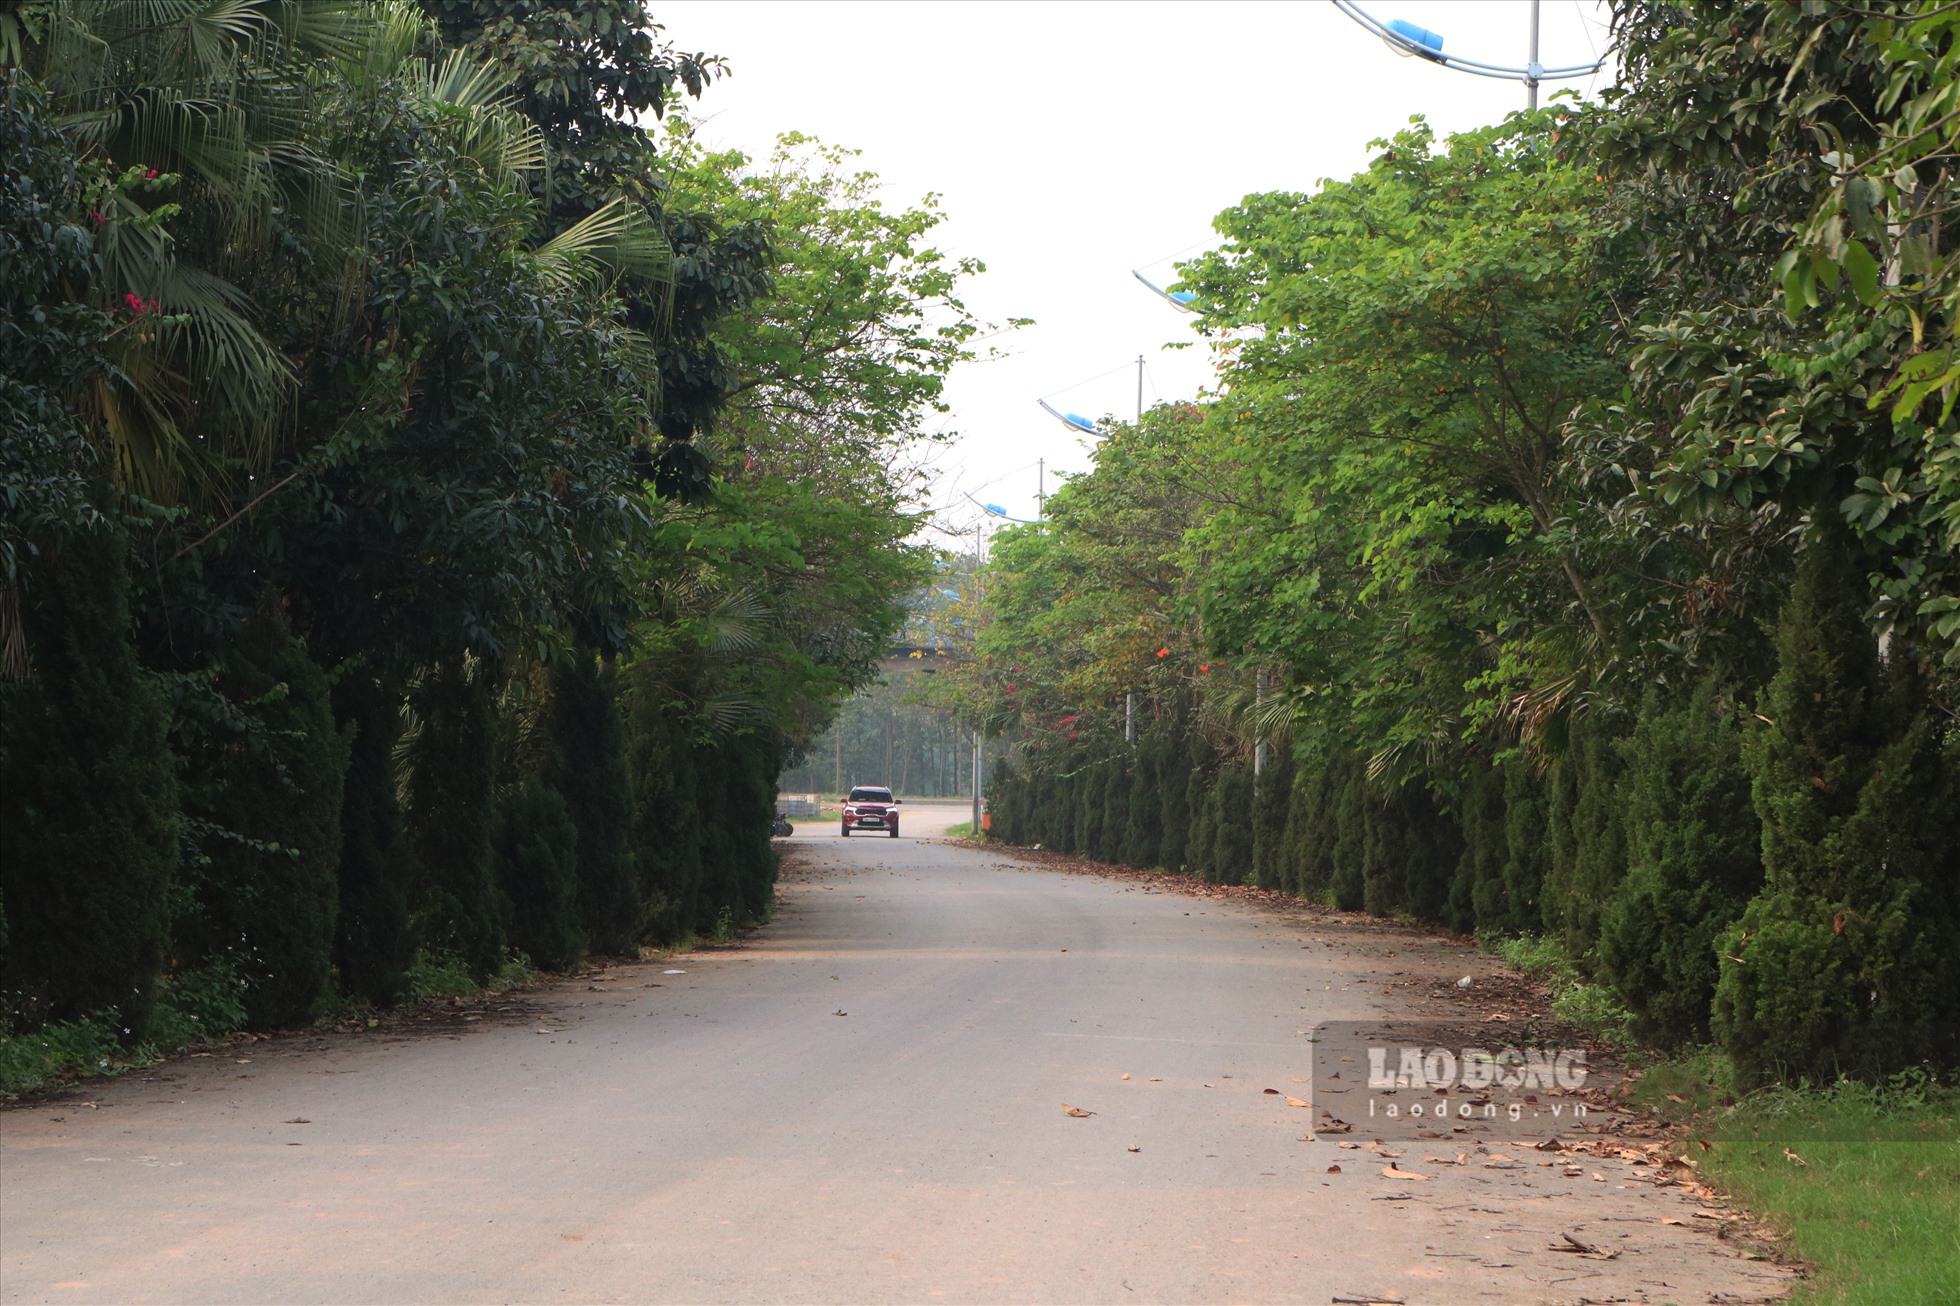 Năm 2019, UBND TP Hà Nội đã có báo cáo Thủ tướng Chính phủ sau khi Thanh tra TP Hà Nội có kết luận thanh tra toàn diện về dự án The Diamond Park. Việc thanh tra toàn diện dự án này được thực hiện theo chỉ đạo của Thủ tướng Chính phủ hồi cuối năm 2018.